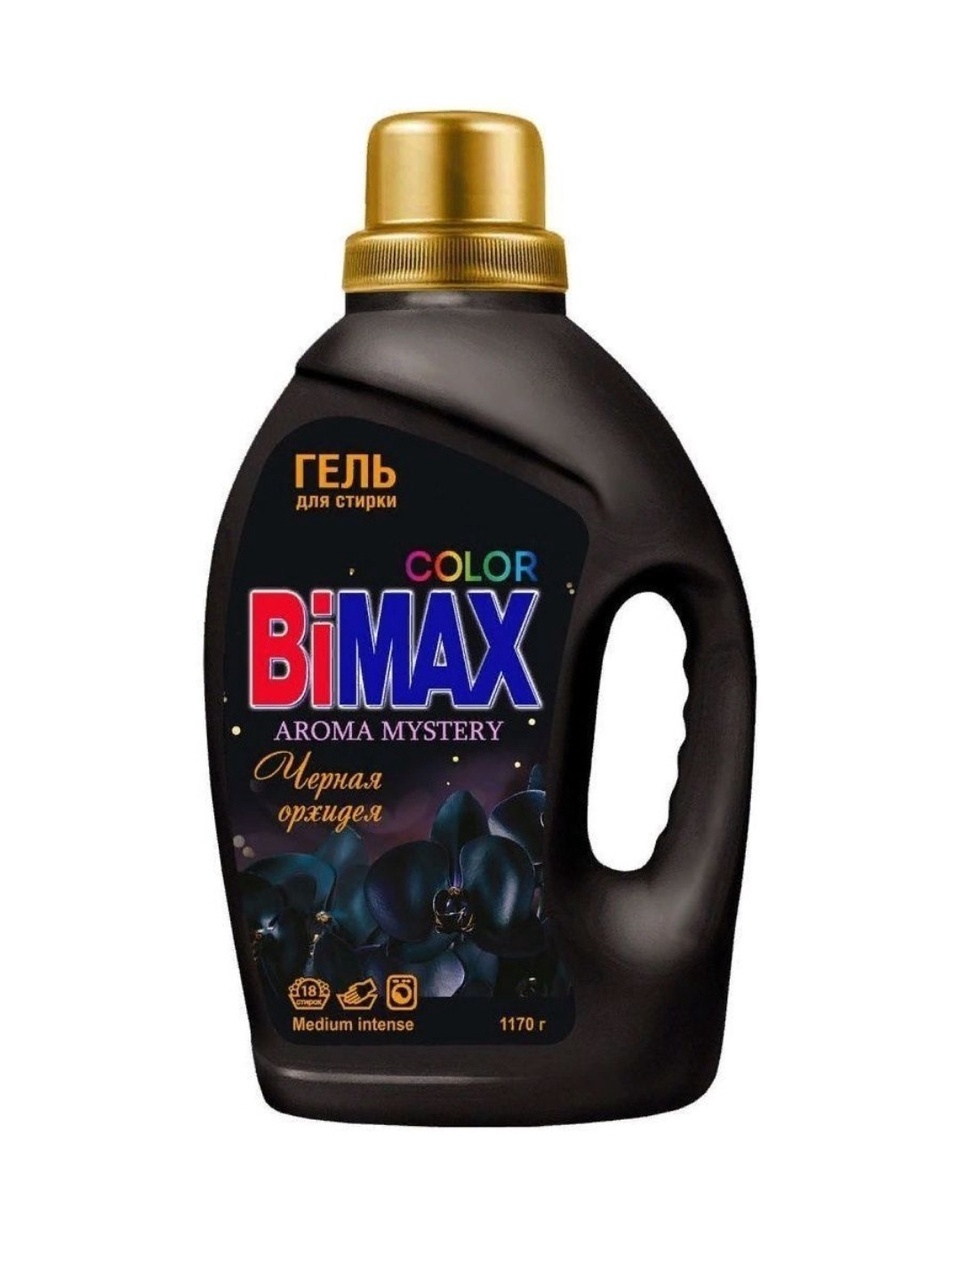 БИМАКС color гель для стирки - 335 ₽, заказать онлайн.